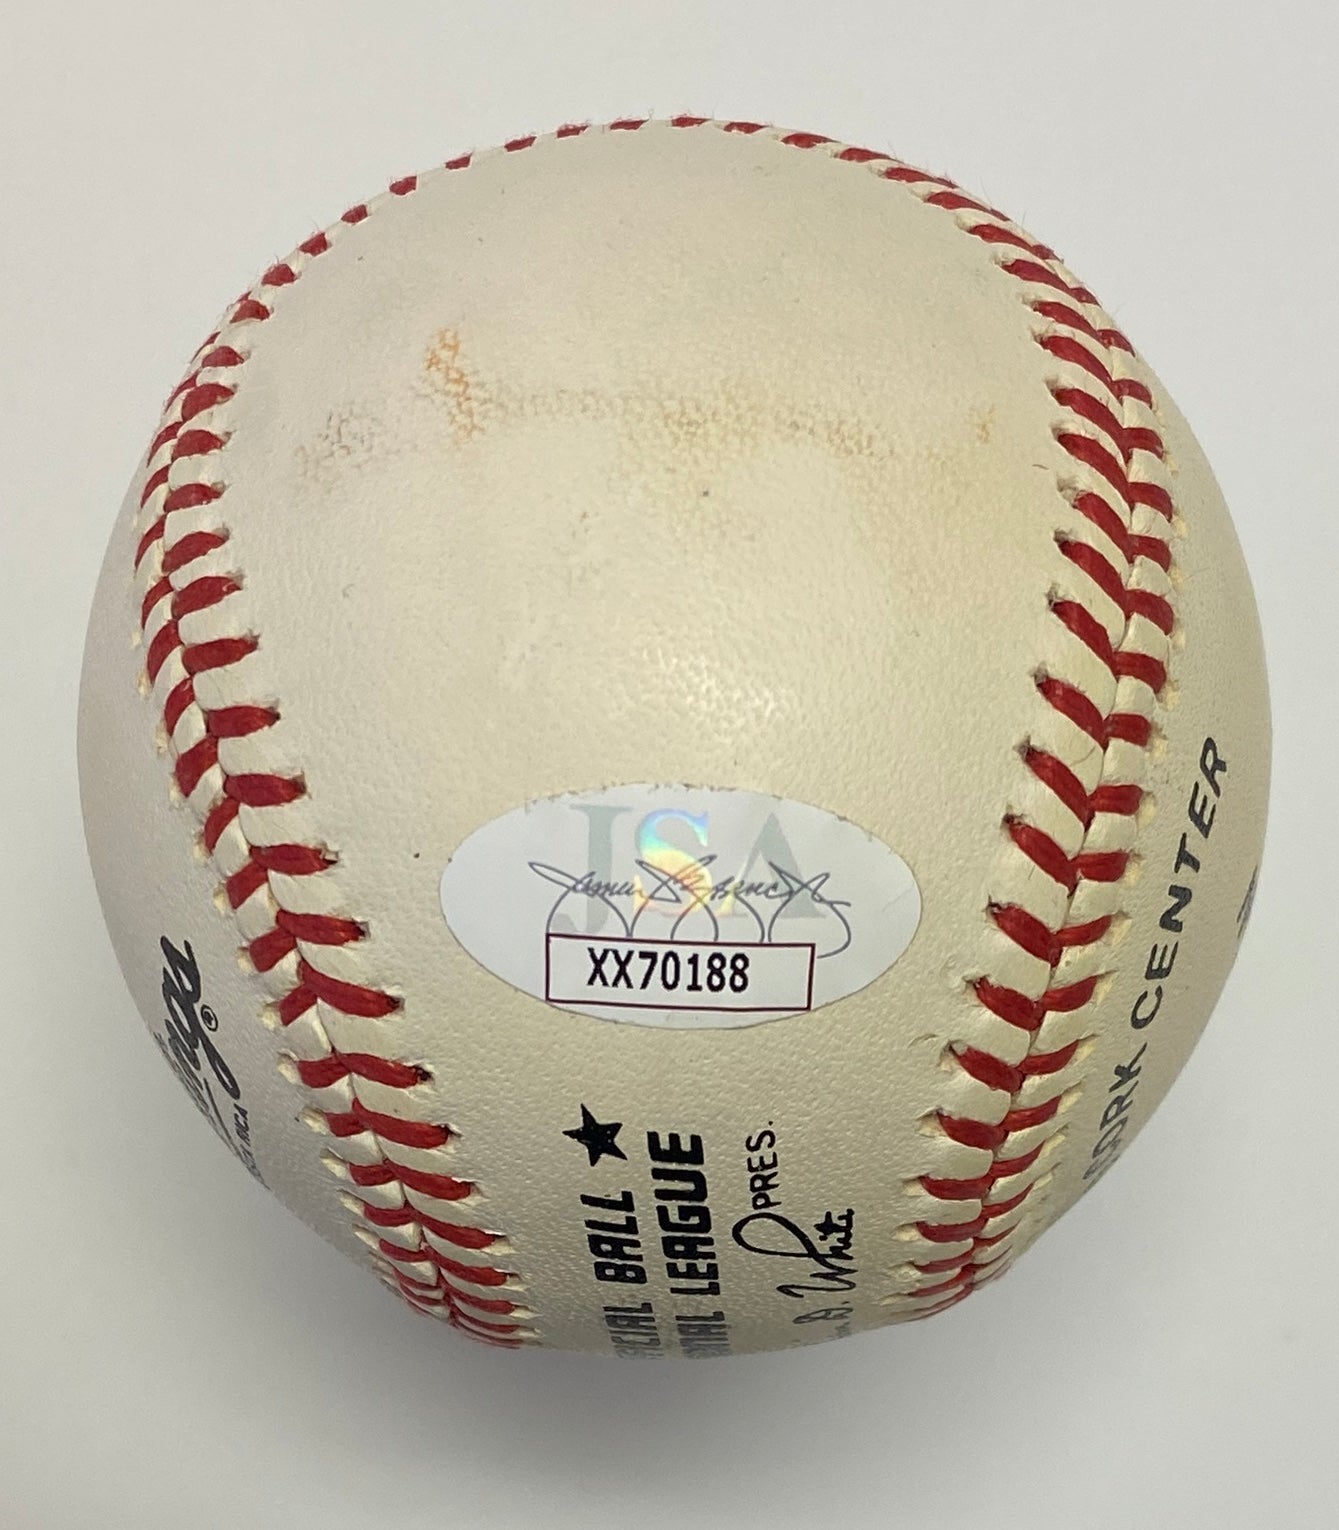 Sandy Koufax Signed Baseball Authenticated By JSA LOA